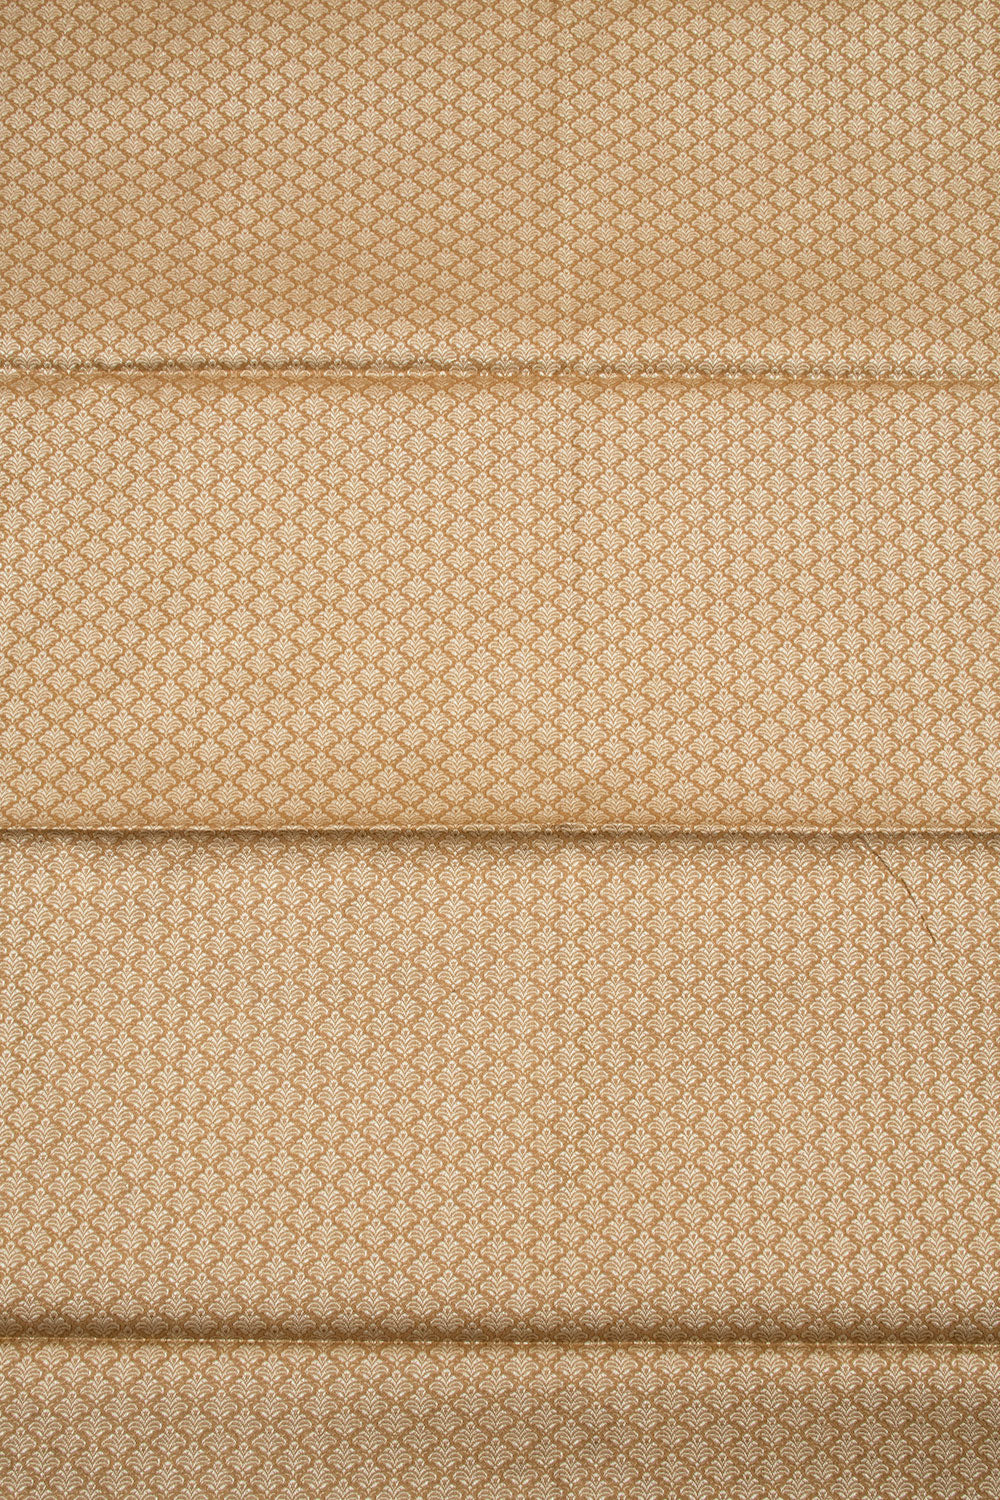 Chocolate Brown Banarasi Cotton 3-Piece Salwar Suit Material 10063163